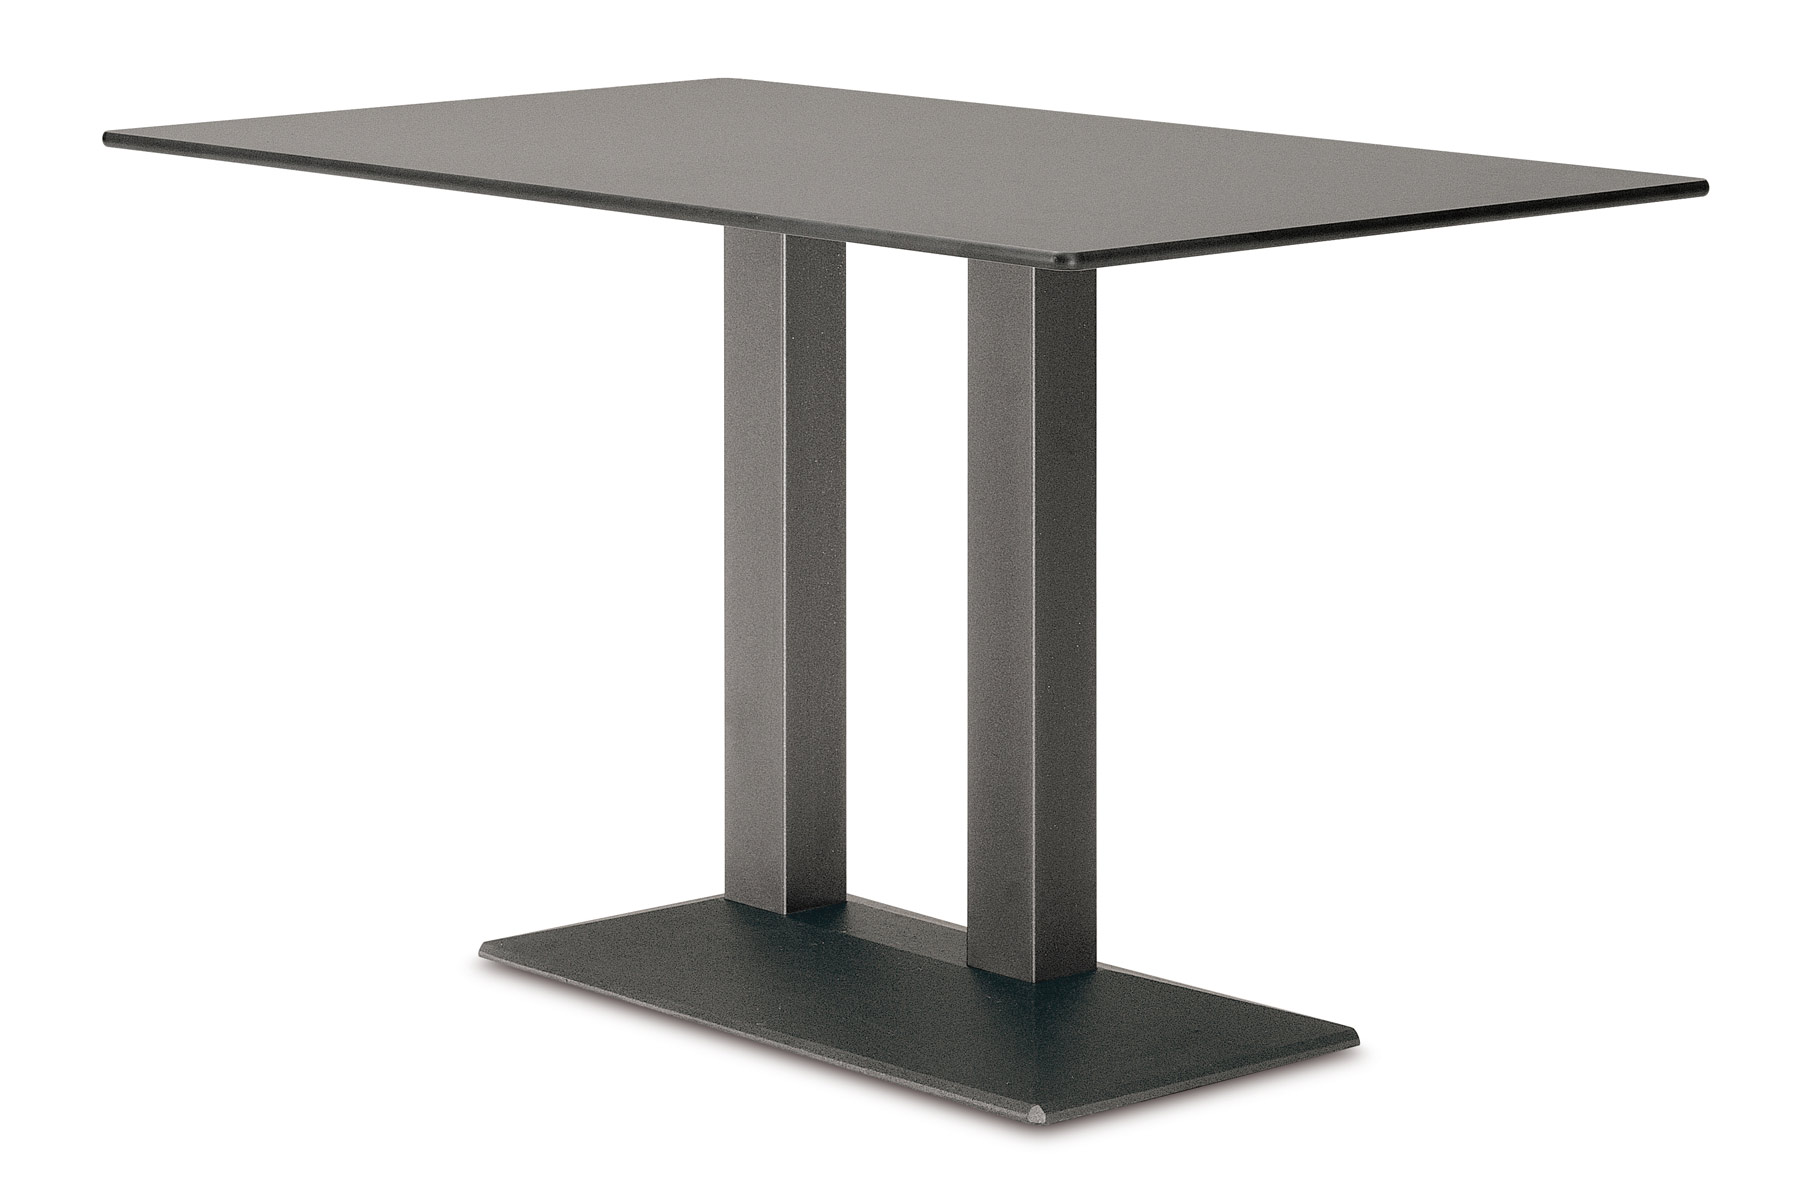 Высота подстолья для стола. Подстолье Quadra артикул 940409. Подстолье металлическое. Подстолье металлическое для стола. Подстолье для прямоугольного стола.